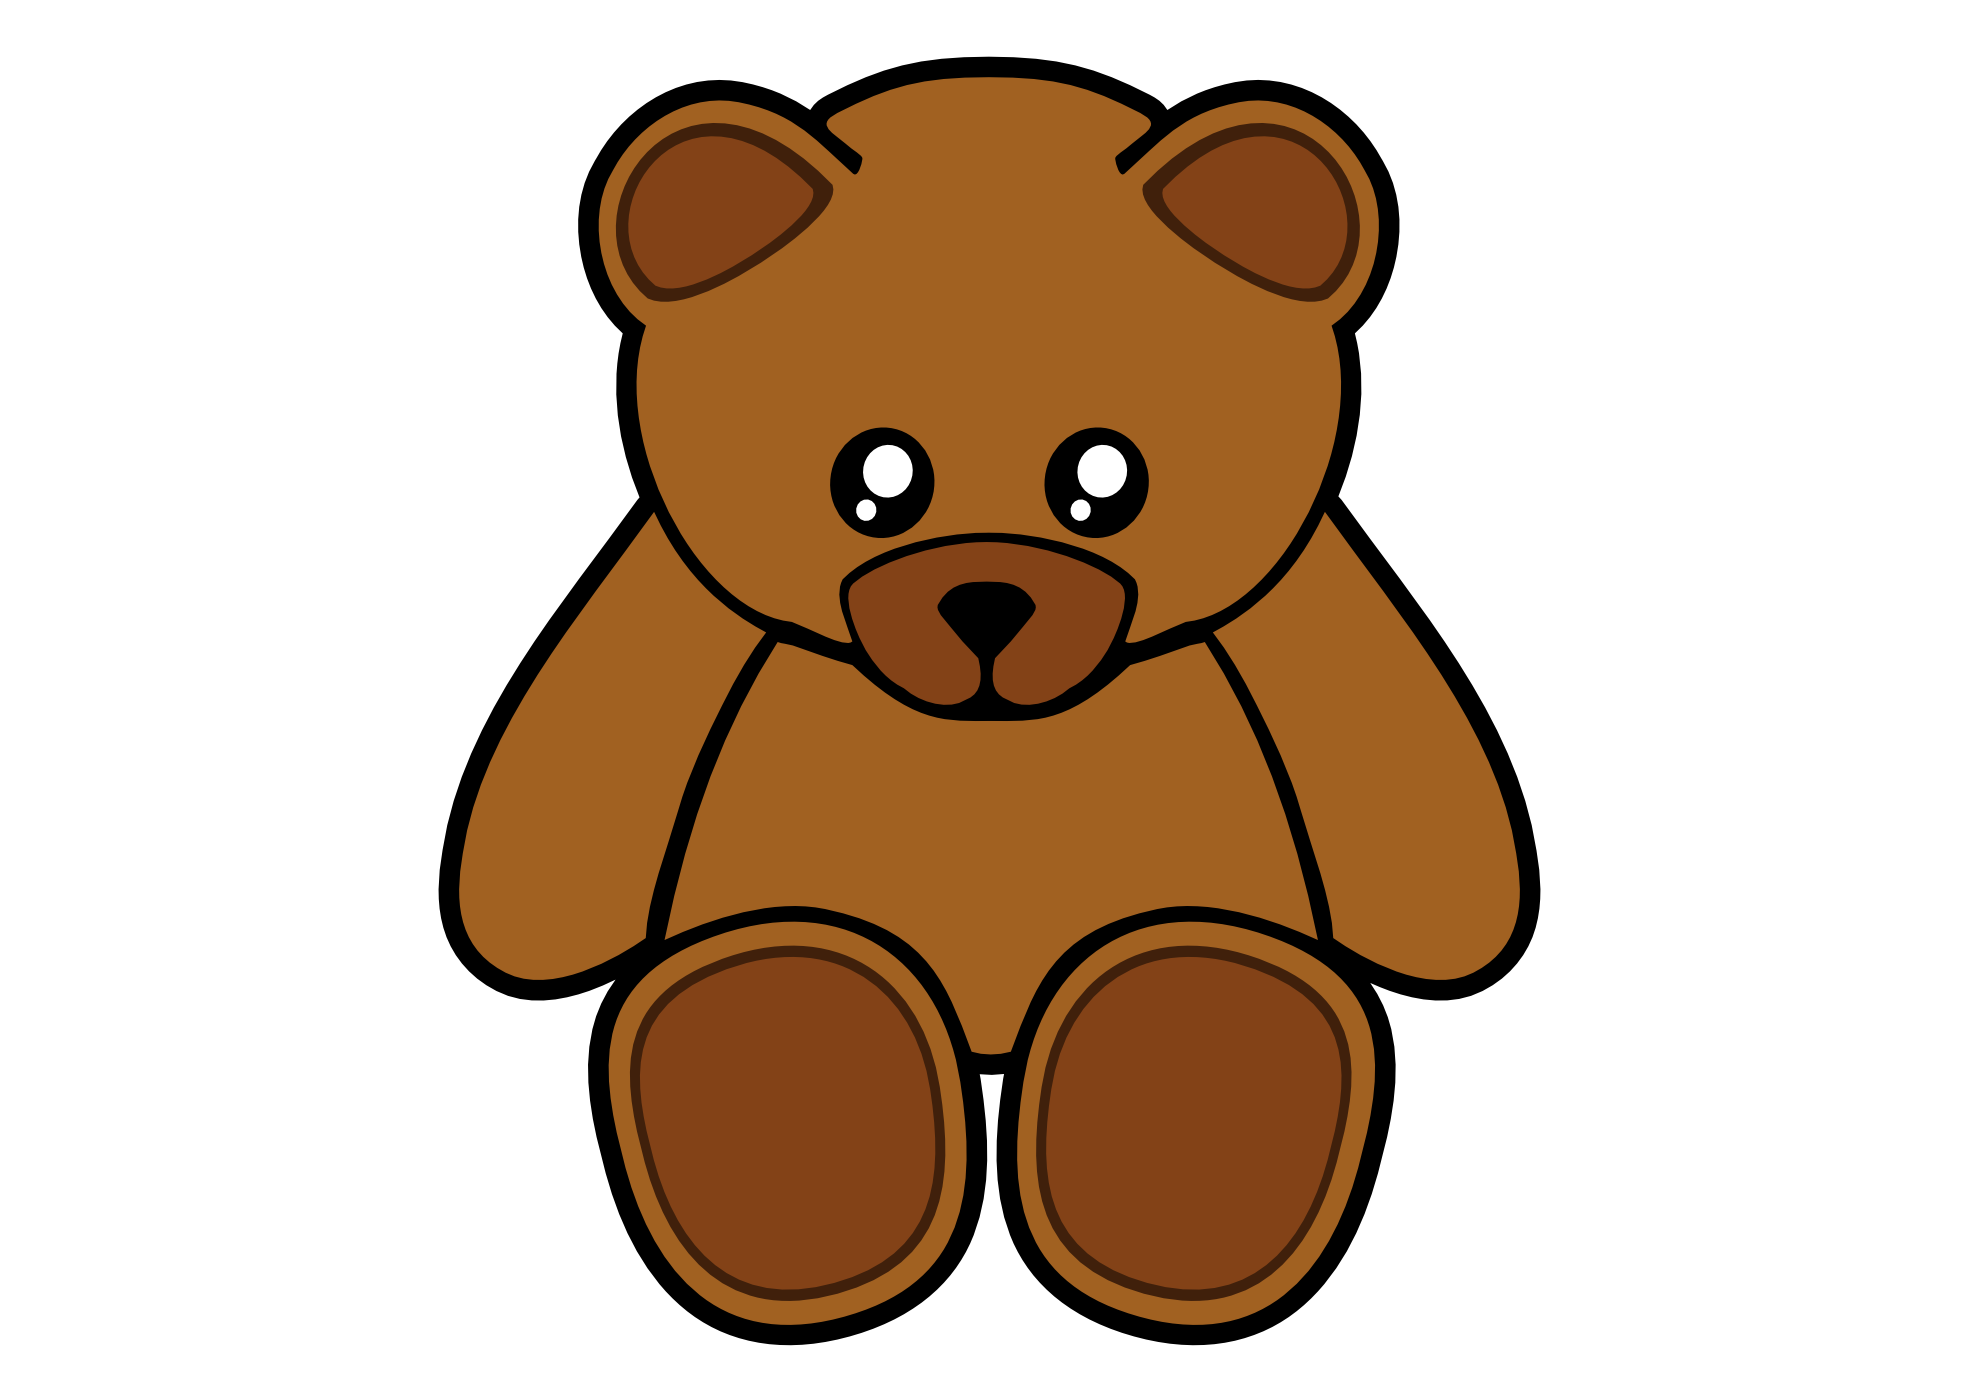 Teddy bear clipart image clip art a teddy bear 2 clipartwiz